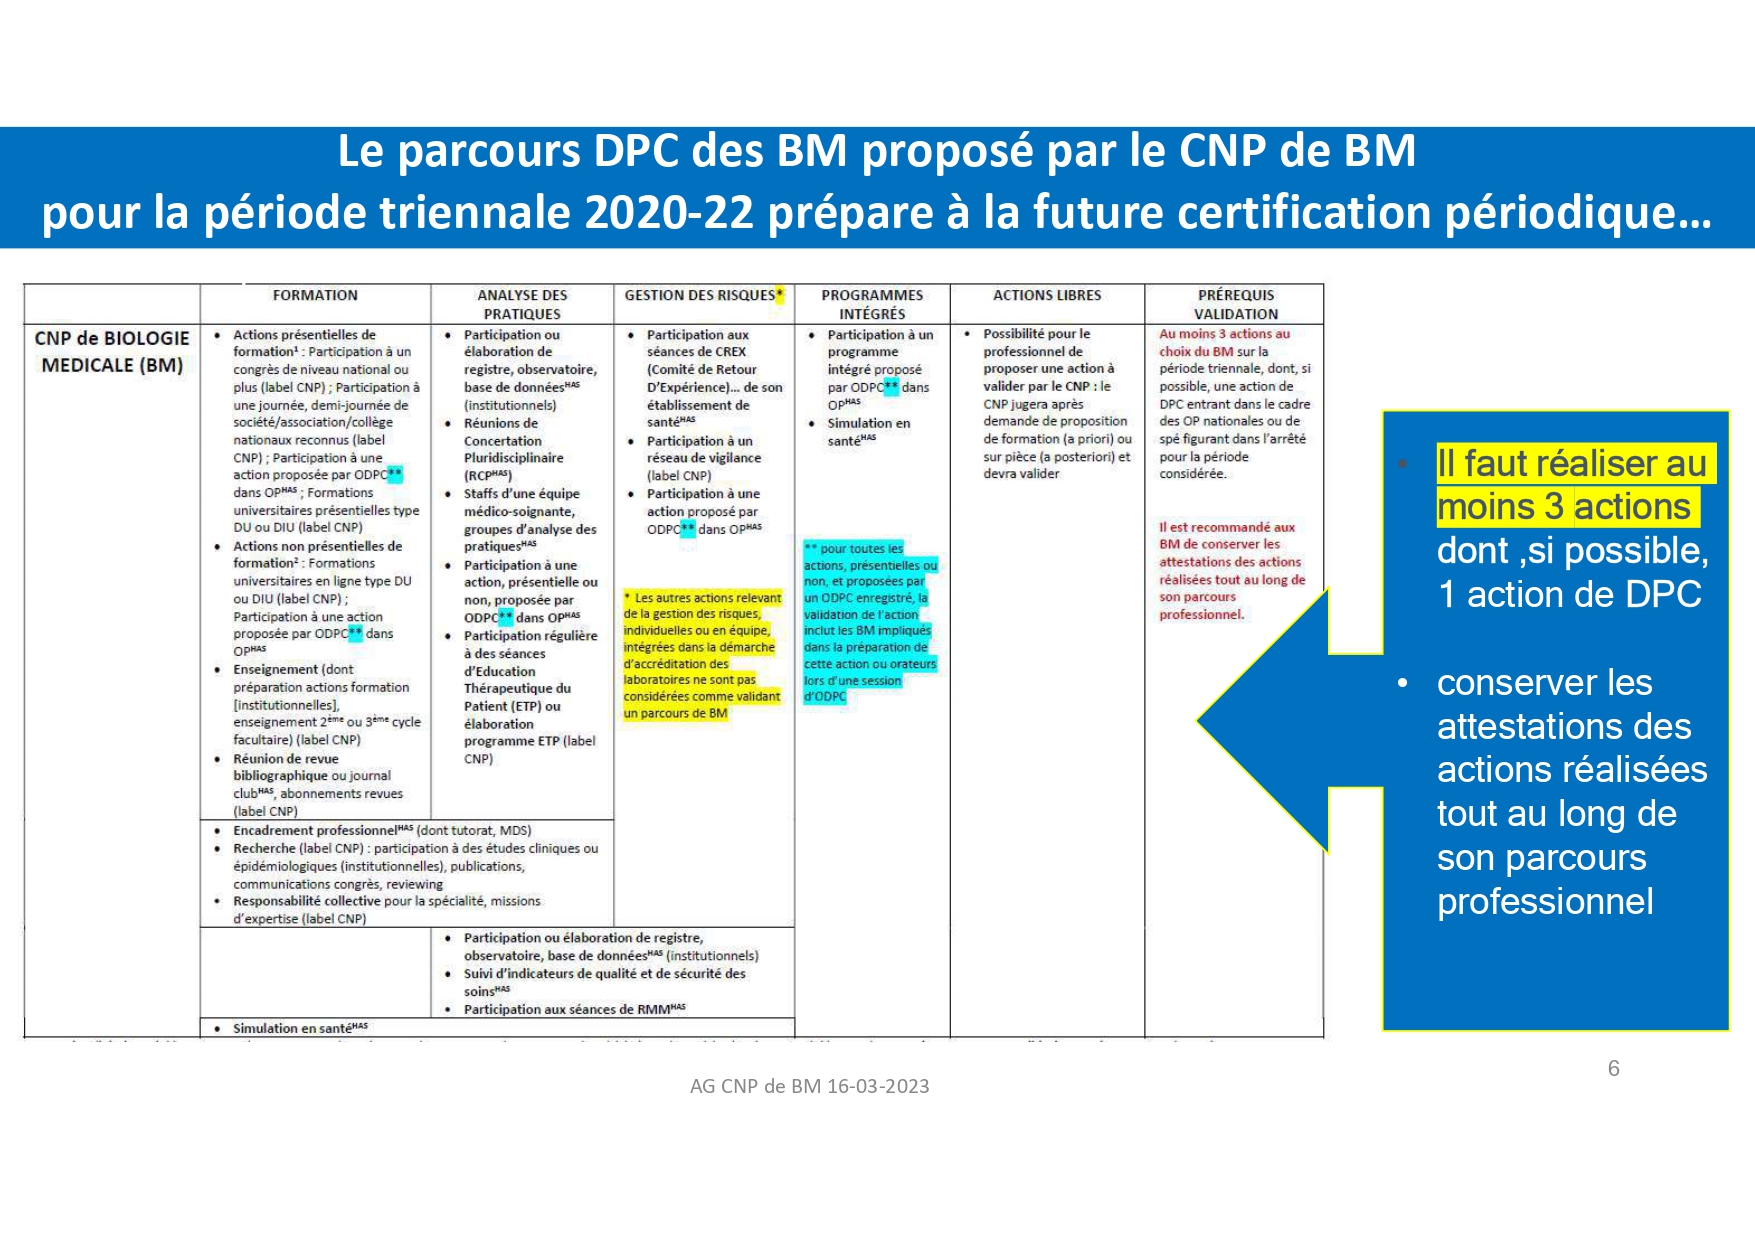 MO_Parcours_professionnel_DPC_des_biologistes_médicaux_compressed_page-0006.jpg